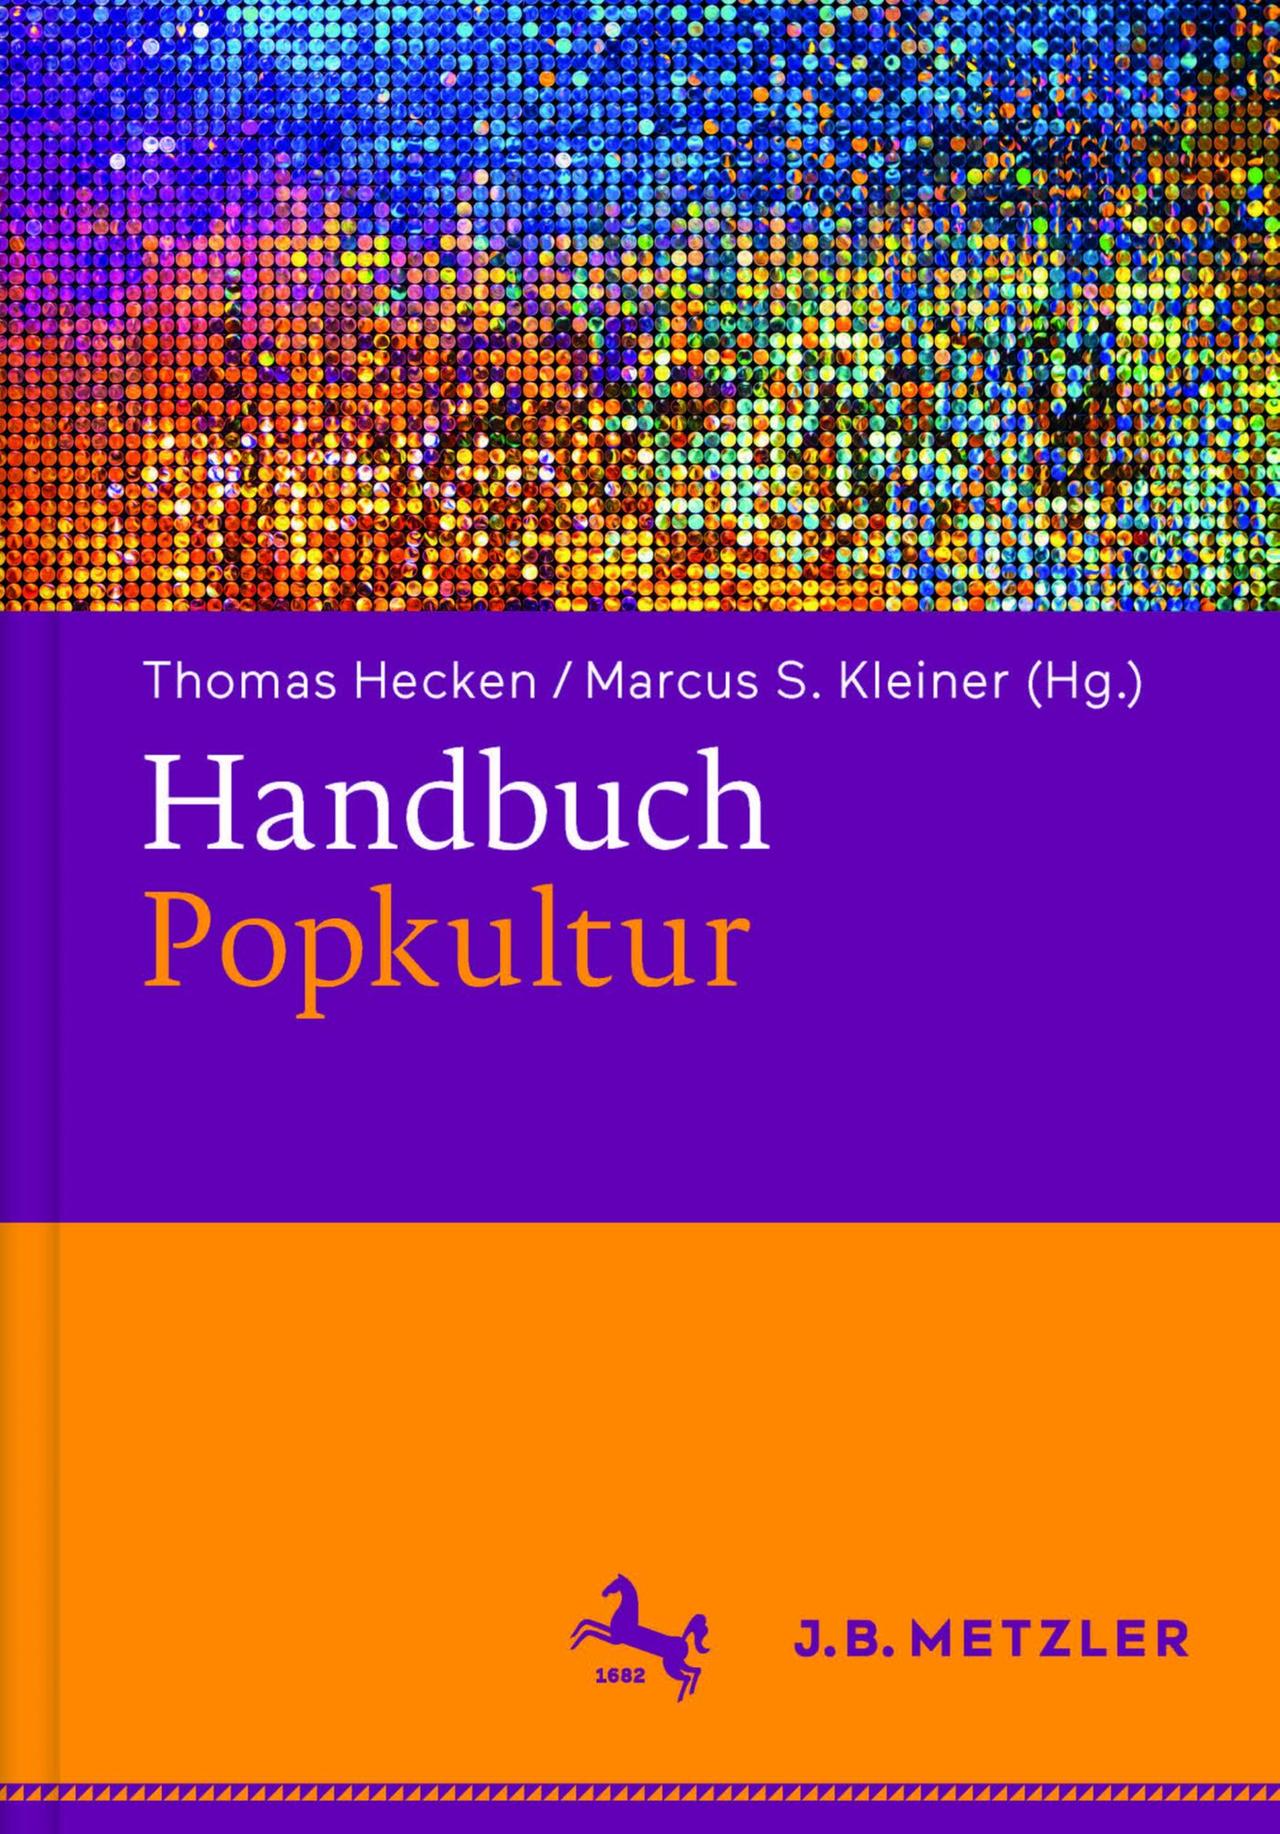 Cover des "Handbuchs Popkultur", herausgegeben von Thomas Hecken und Marcus S. Kleiner